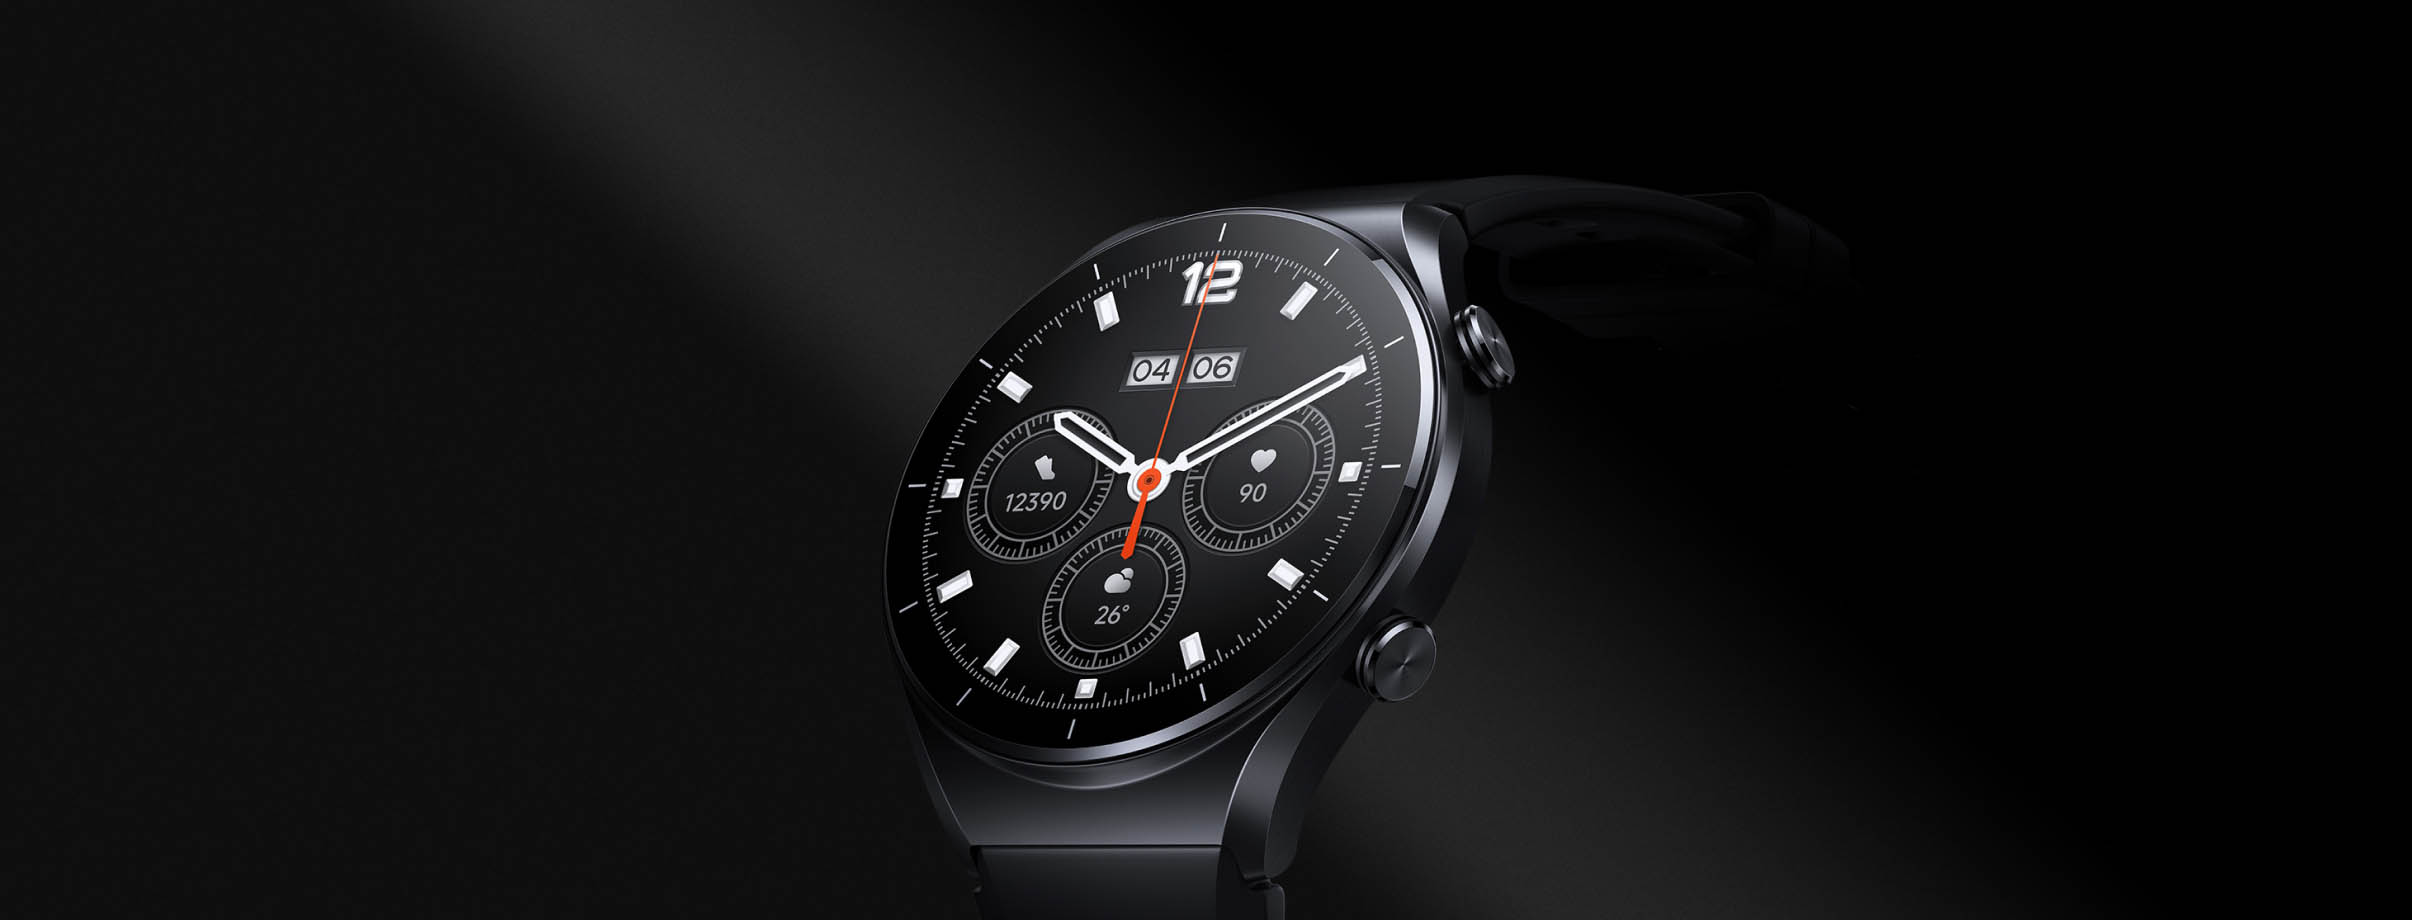 Часы амолед экраном. Часы Сяоми s1. Смарт-часы Xiaomi watch s1. Часы Сяоми s1 Active. Xiaomi watch s1 черные.